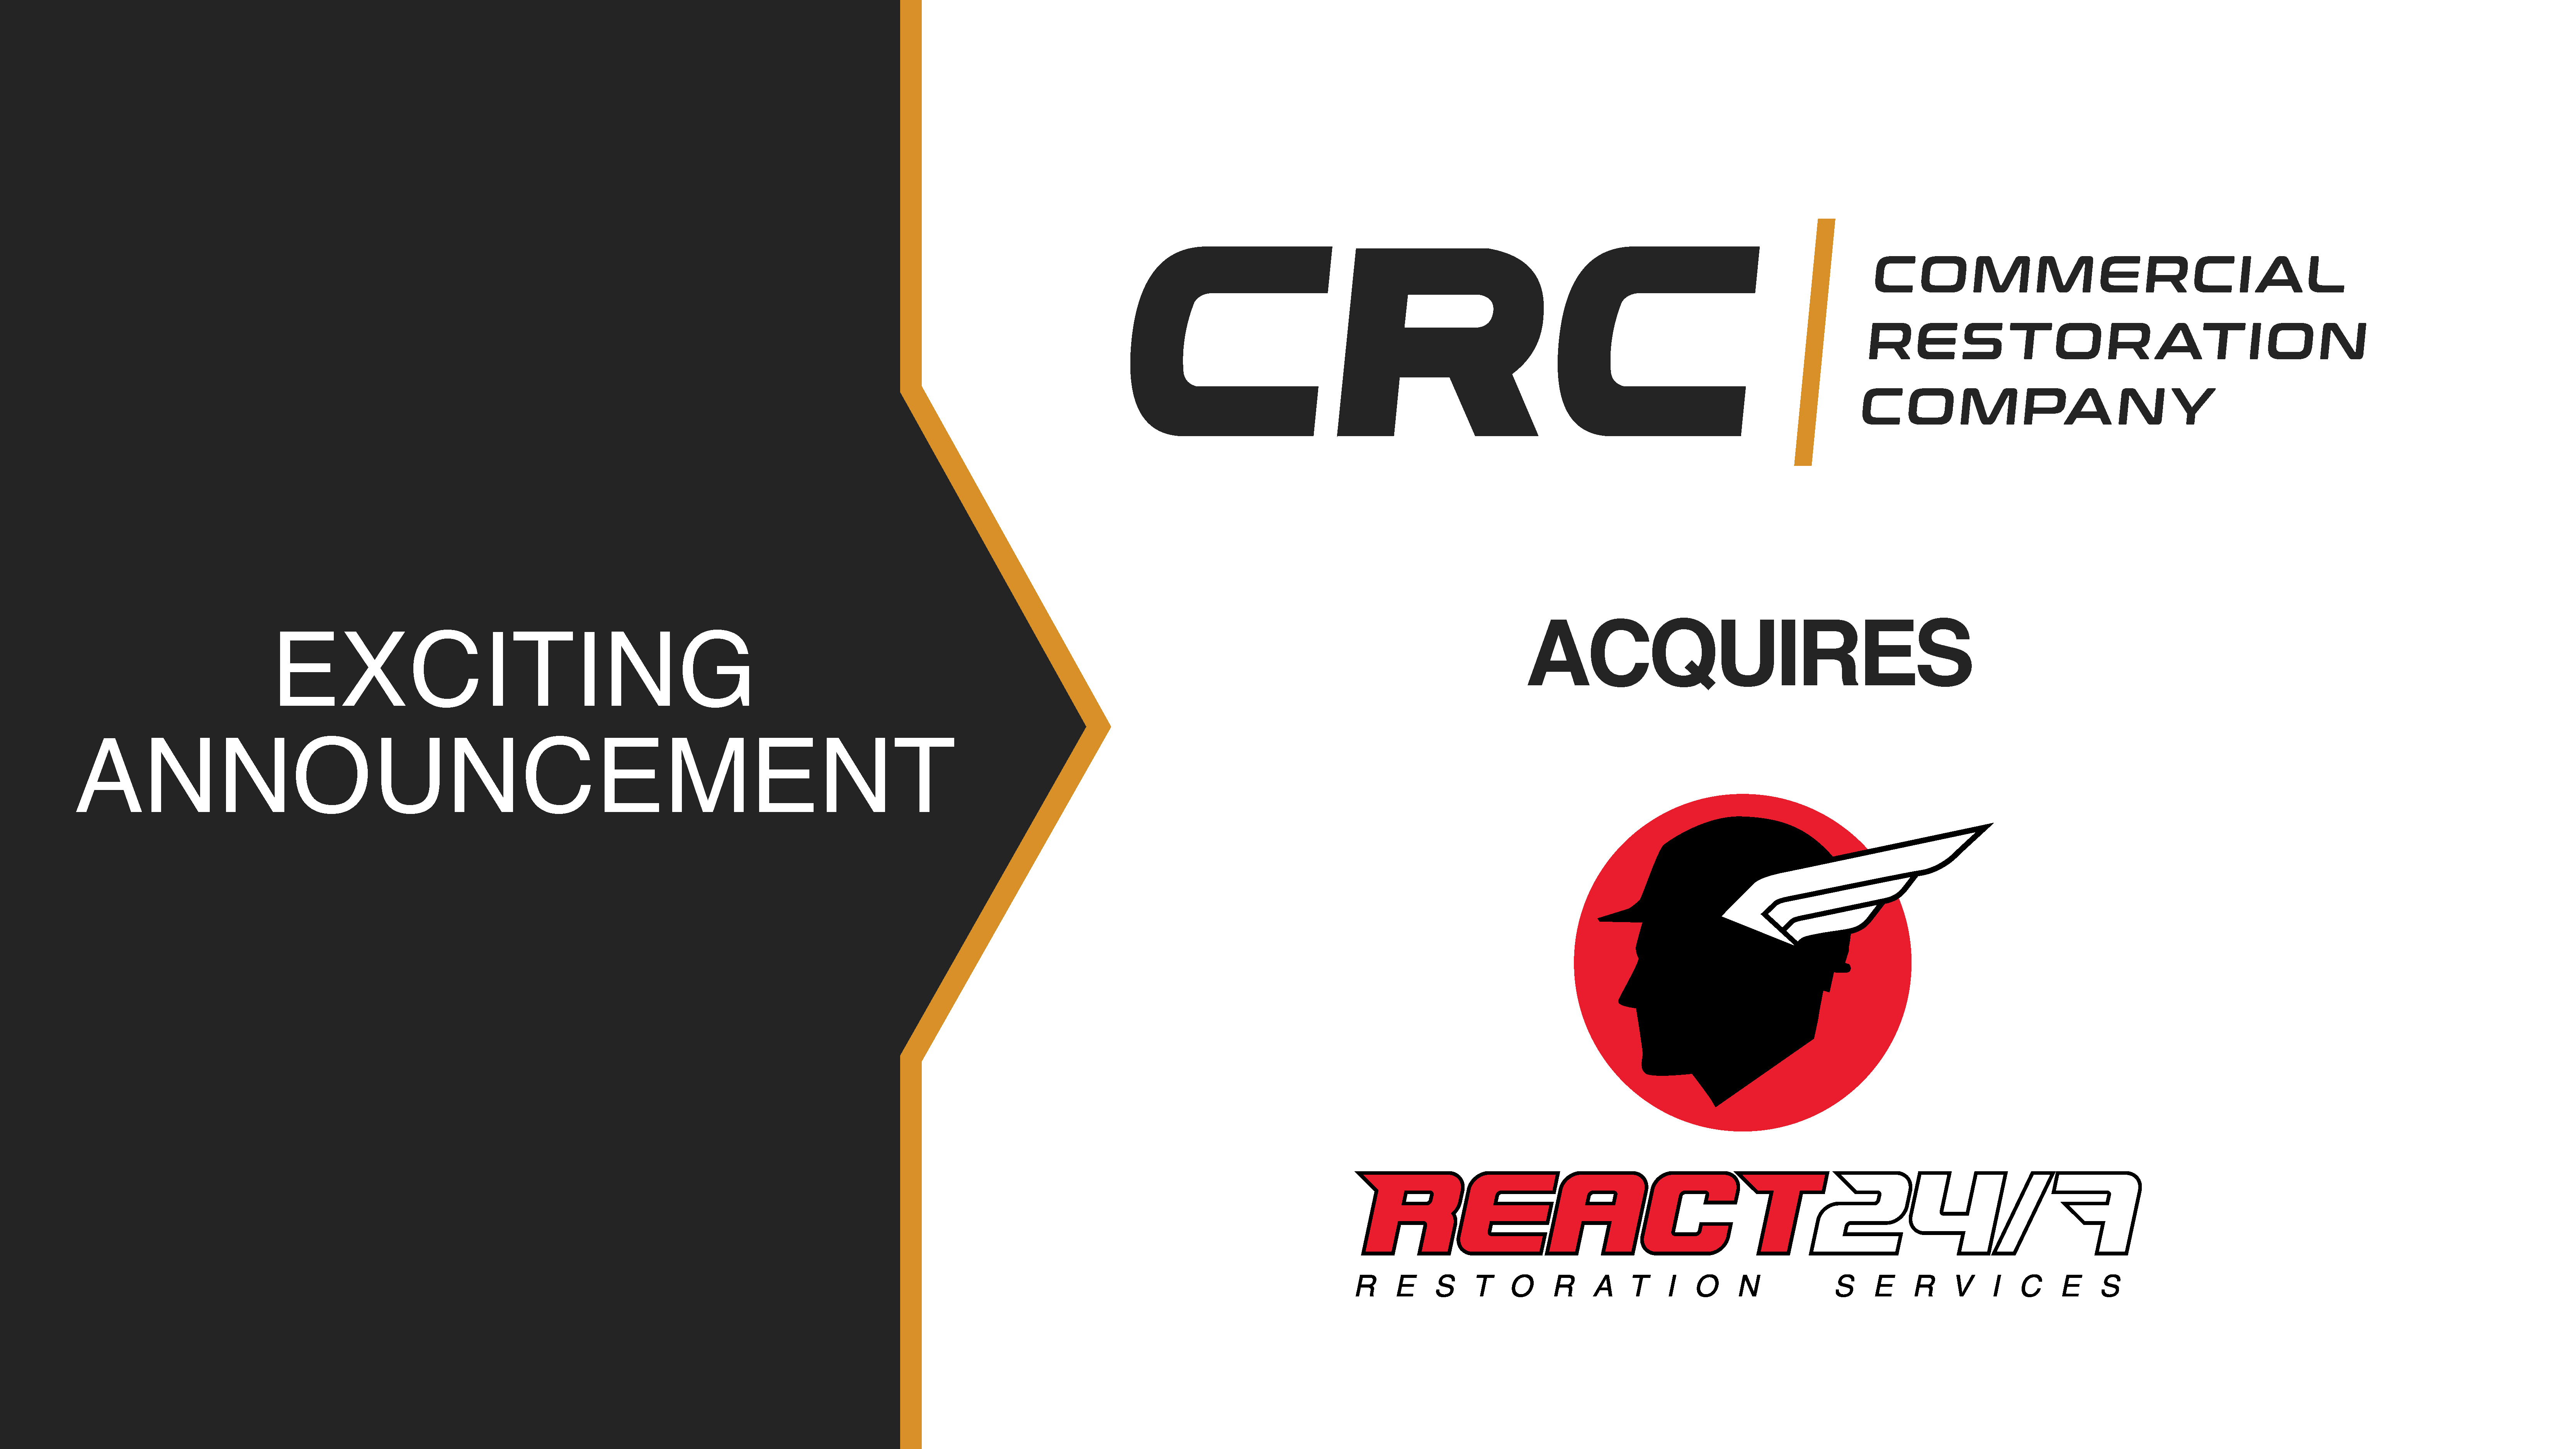 CRC acquires React 24/7